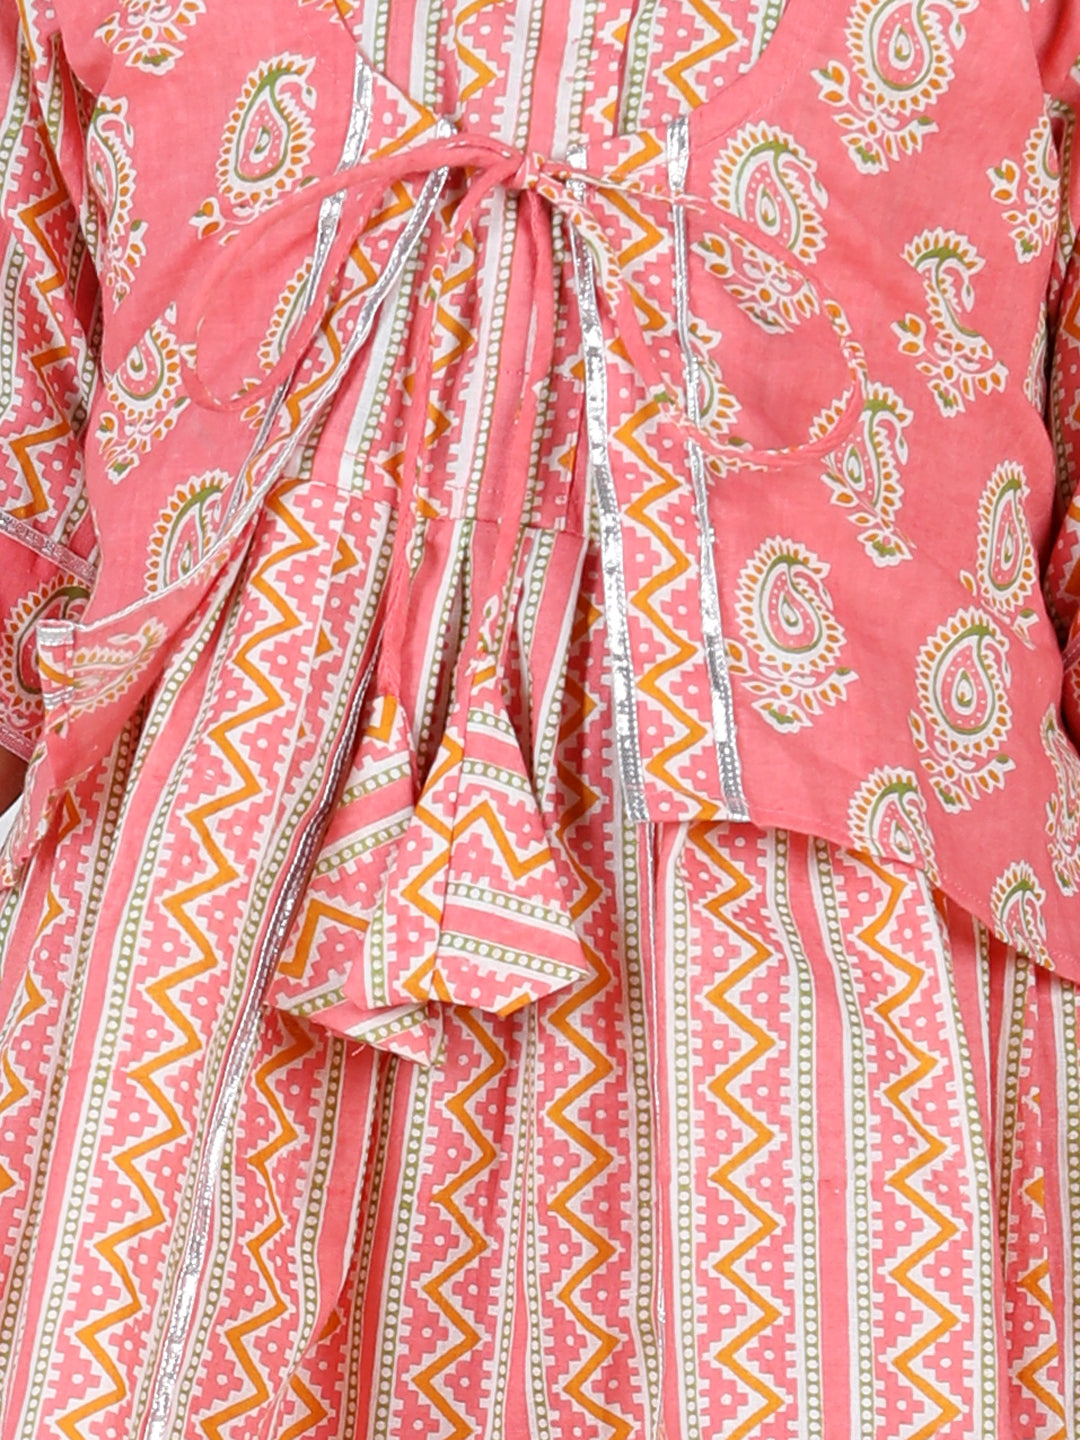 Ethnic Motif Printed Lace Detailed Jacket Styled Kurta & Sharara Set